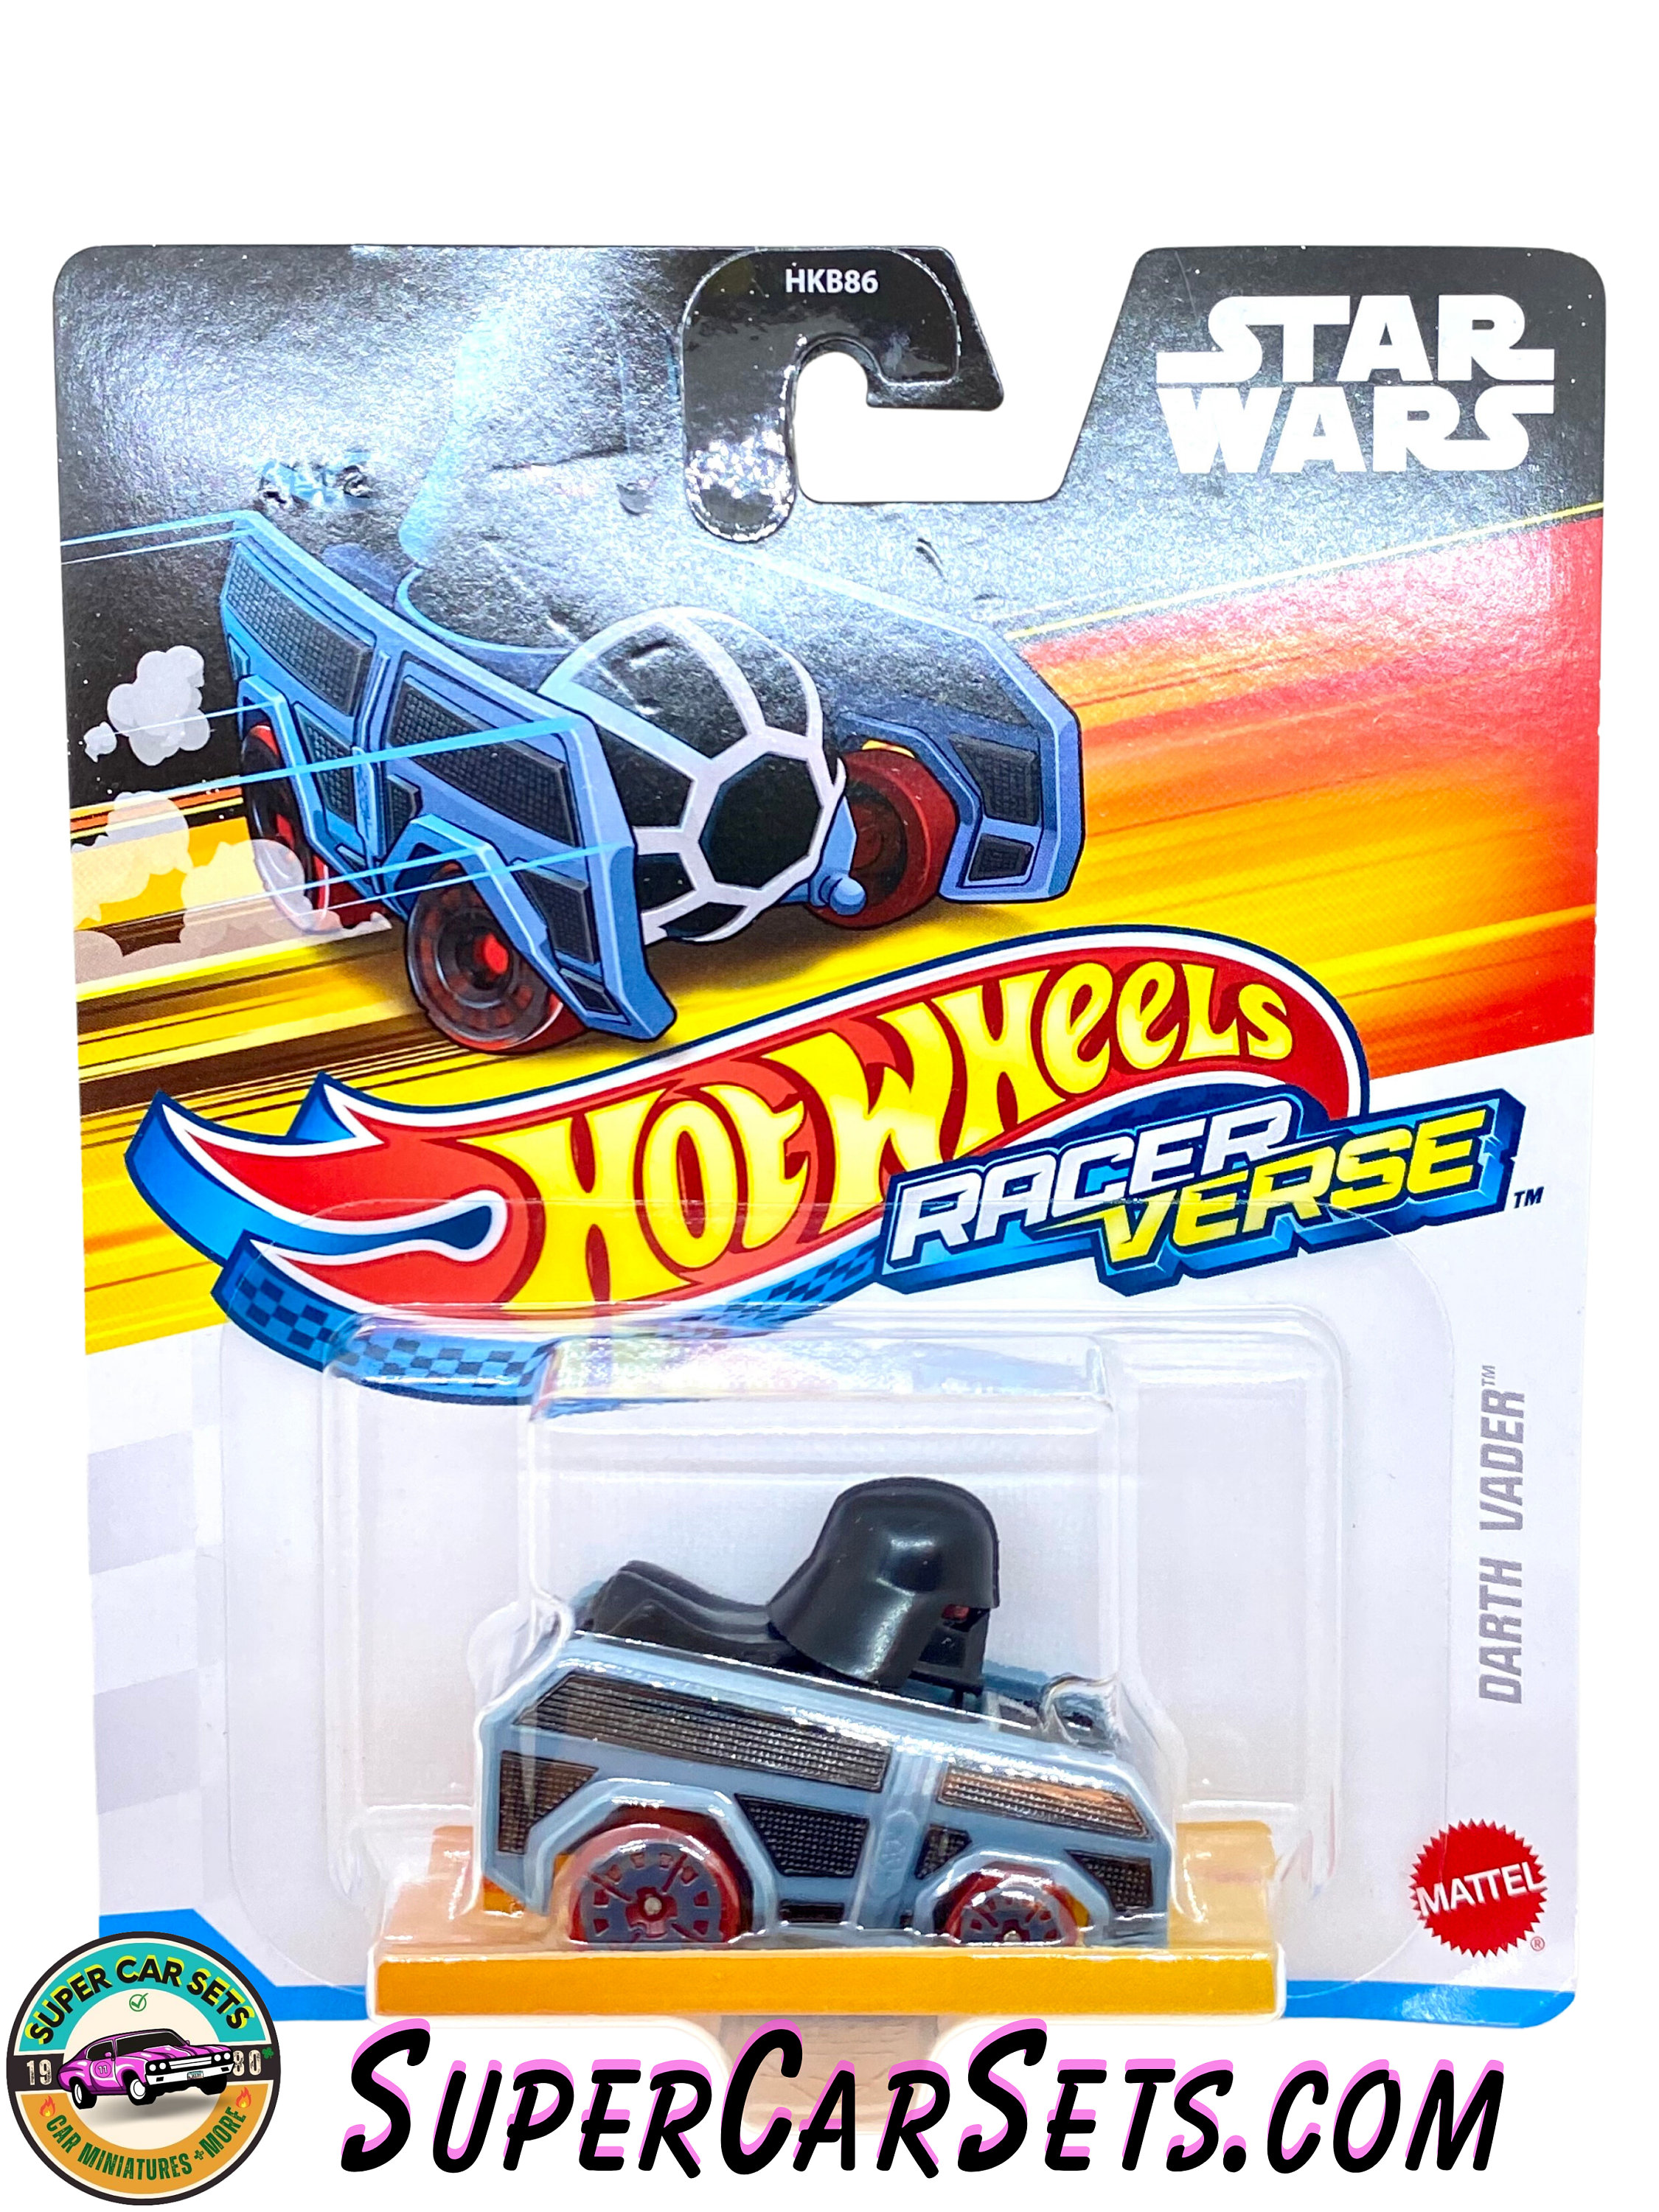 Carrinho Hot Wheels Racer Verse Singles Original HKB86 Darth Vader